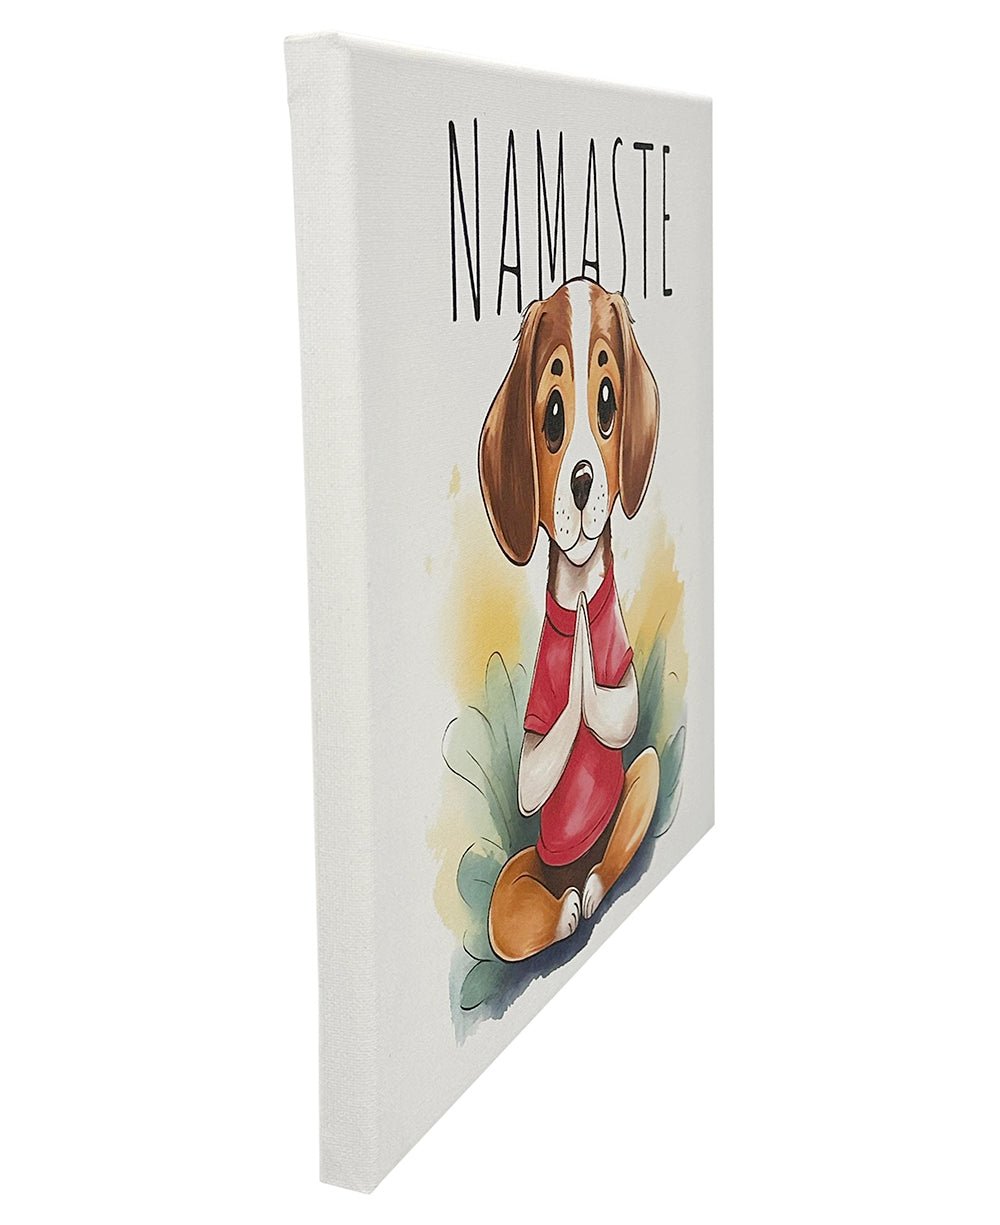 Namaste Meditating Dog Wall Canvas - Posters, Prints, & Visual Artwork